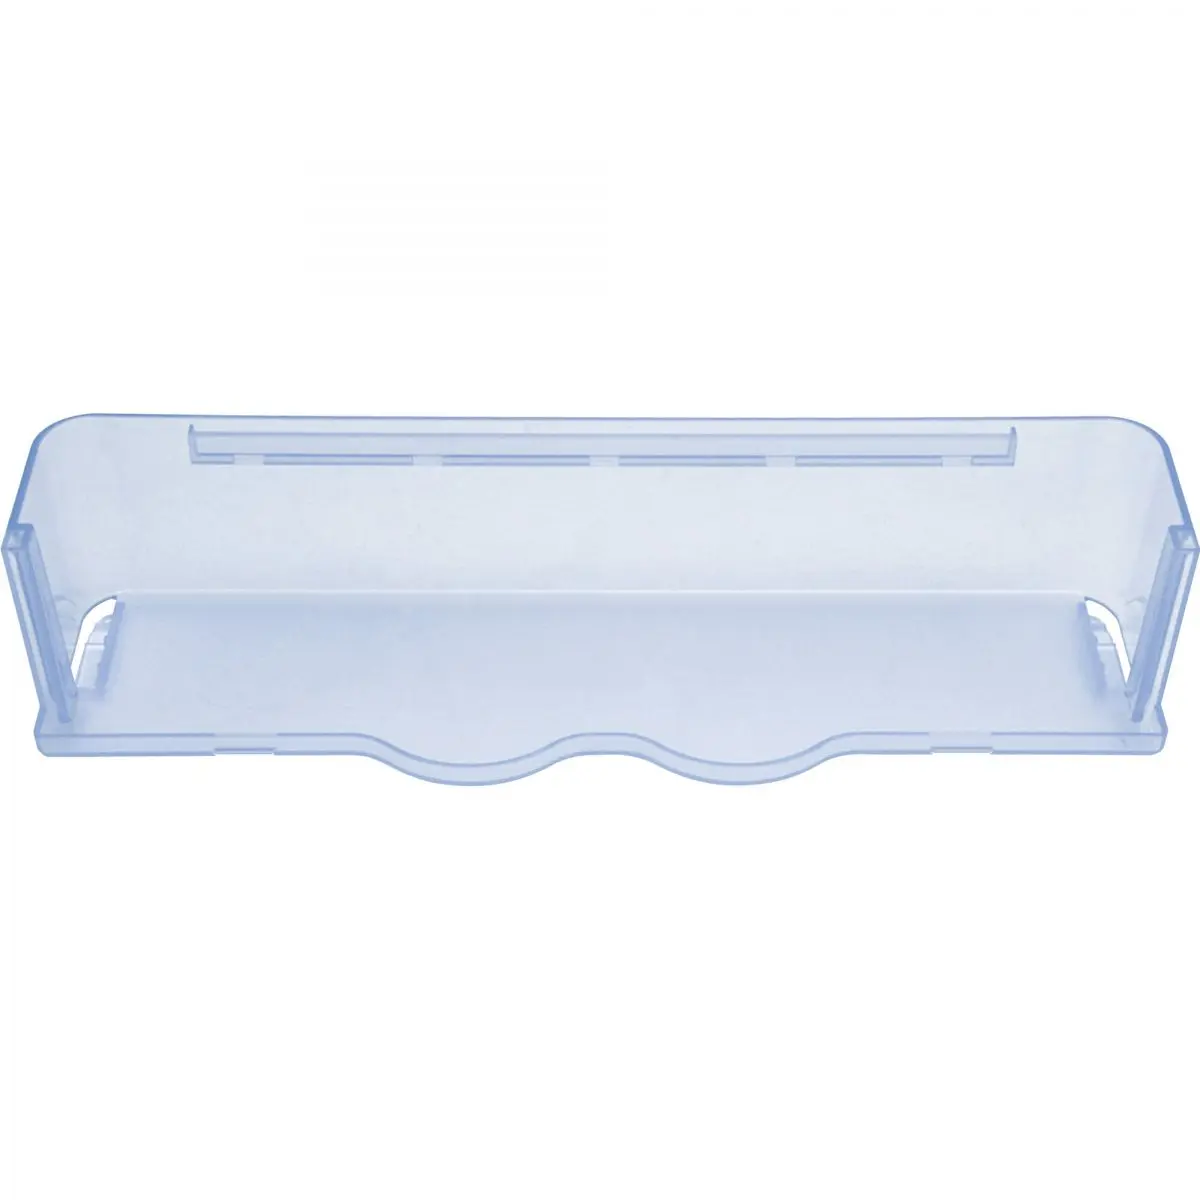 Polička transparentná modrá, š 41,1 x v 8,5 x h 11 cm pre chladničky Dometic série 8, RGE 2100